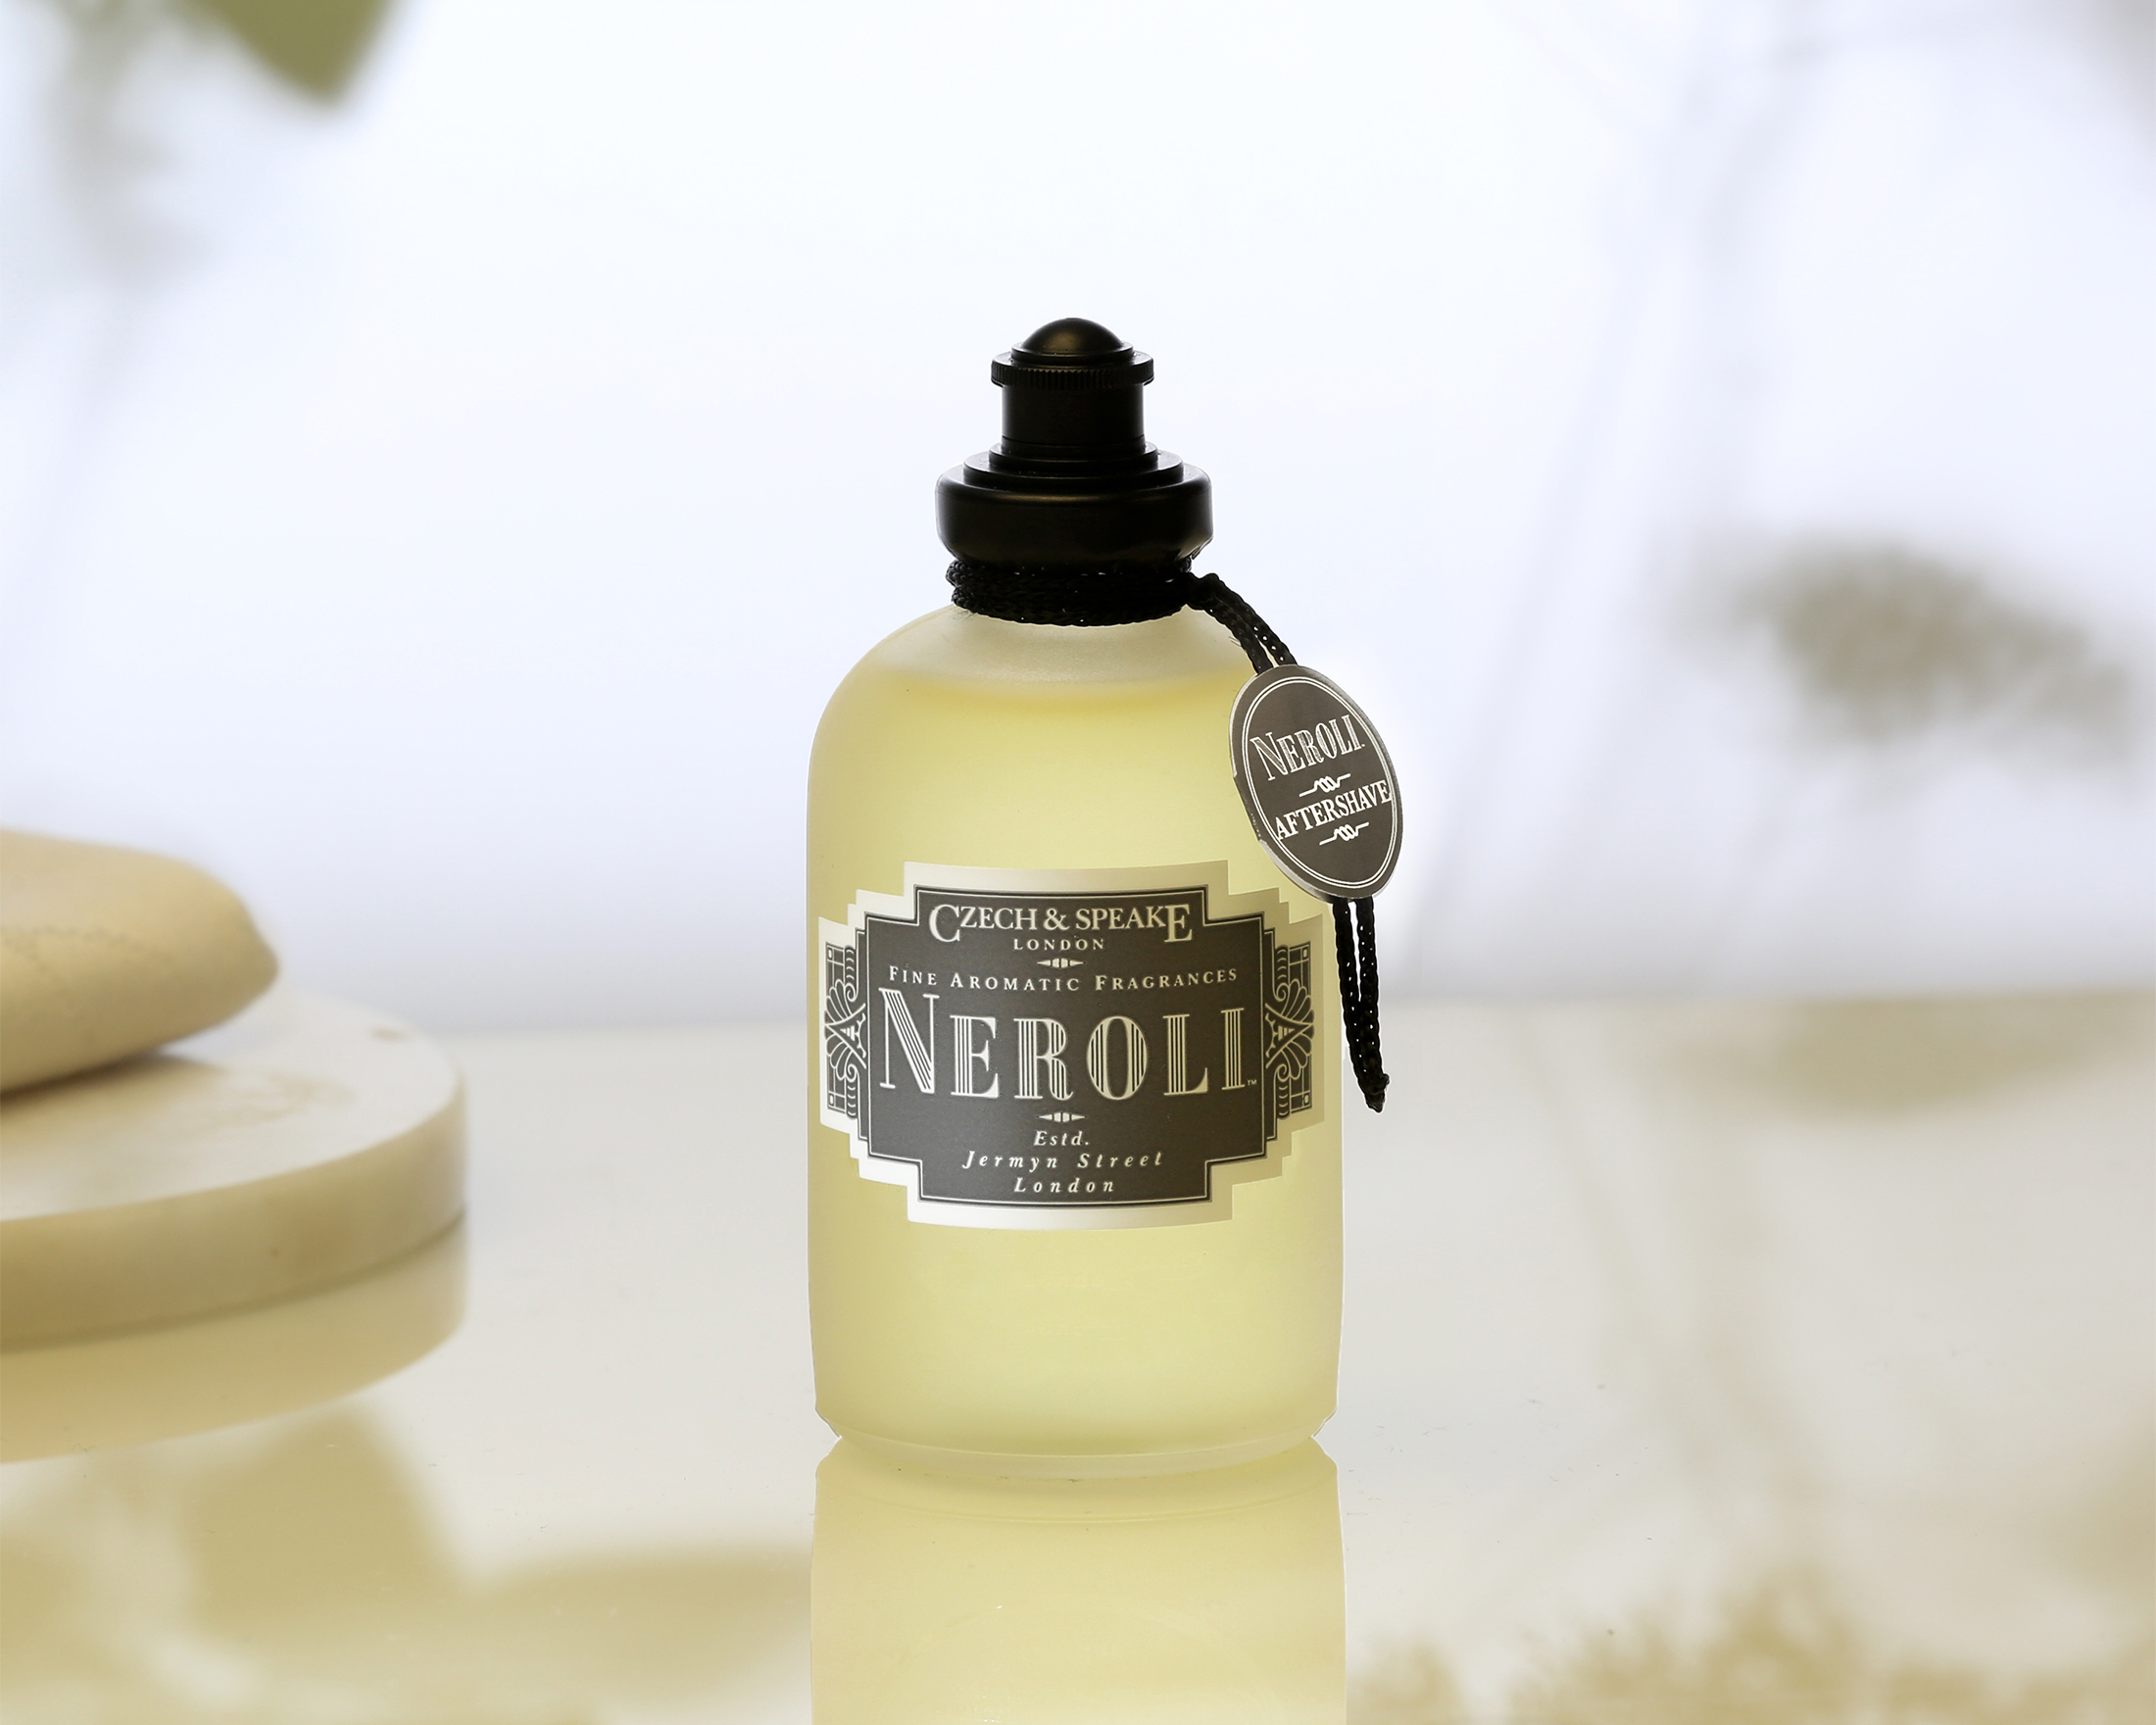 Neroli Aftershave Shaker 50ml by Czech & Speake in summer scene